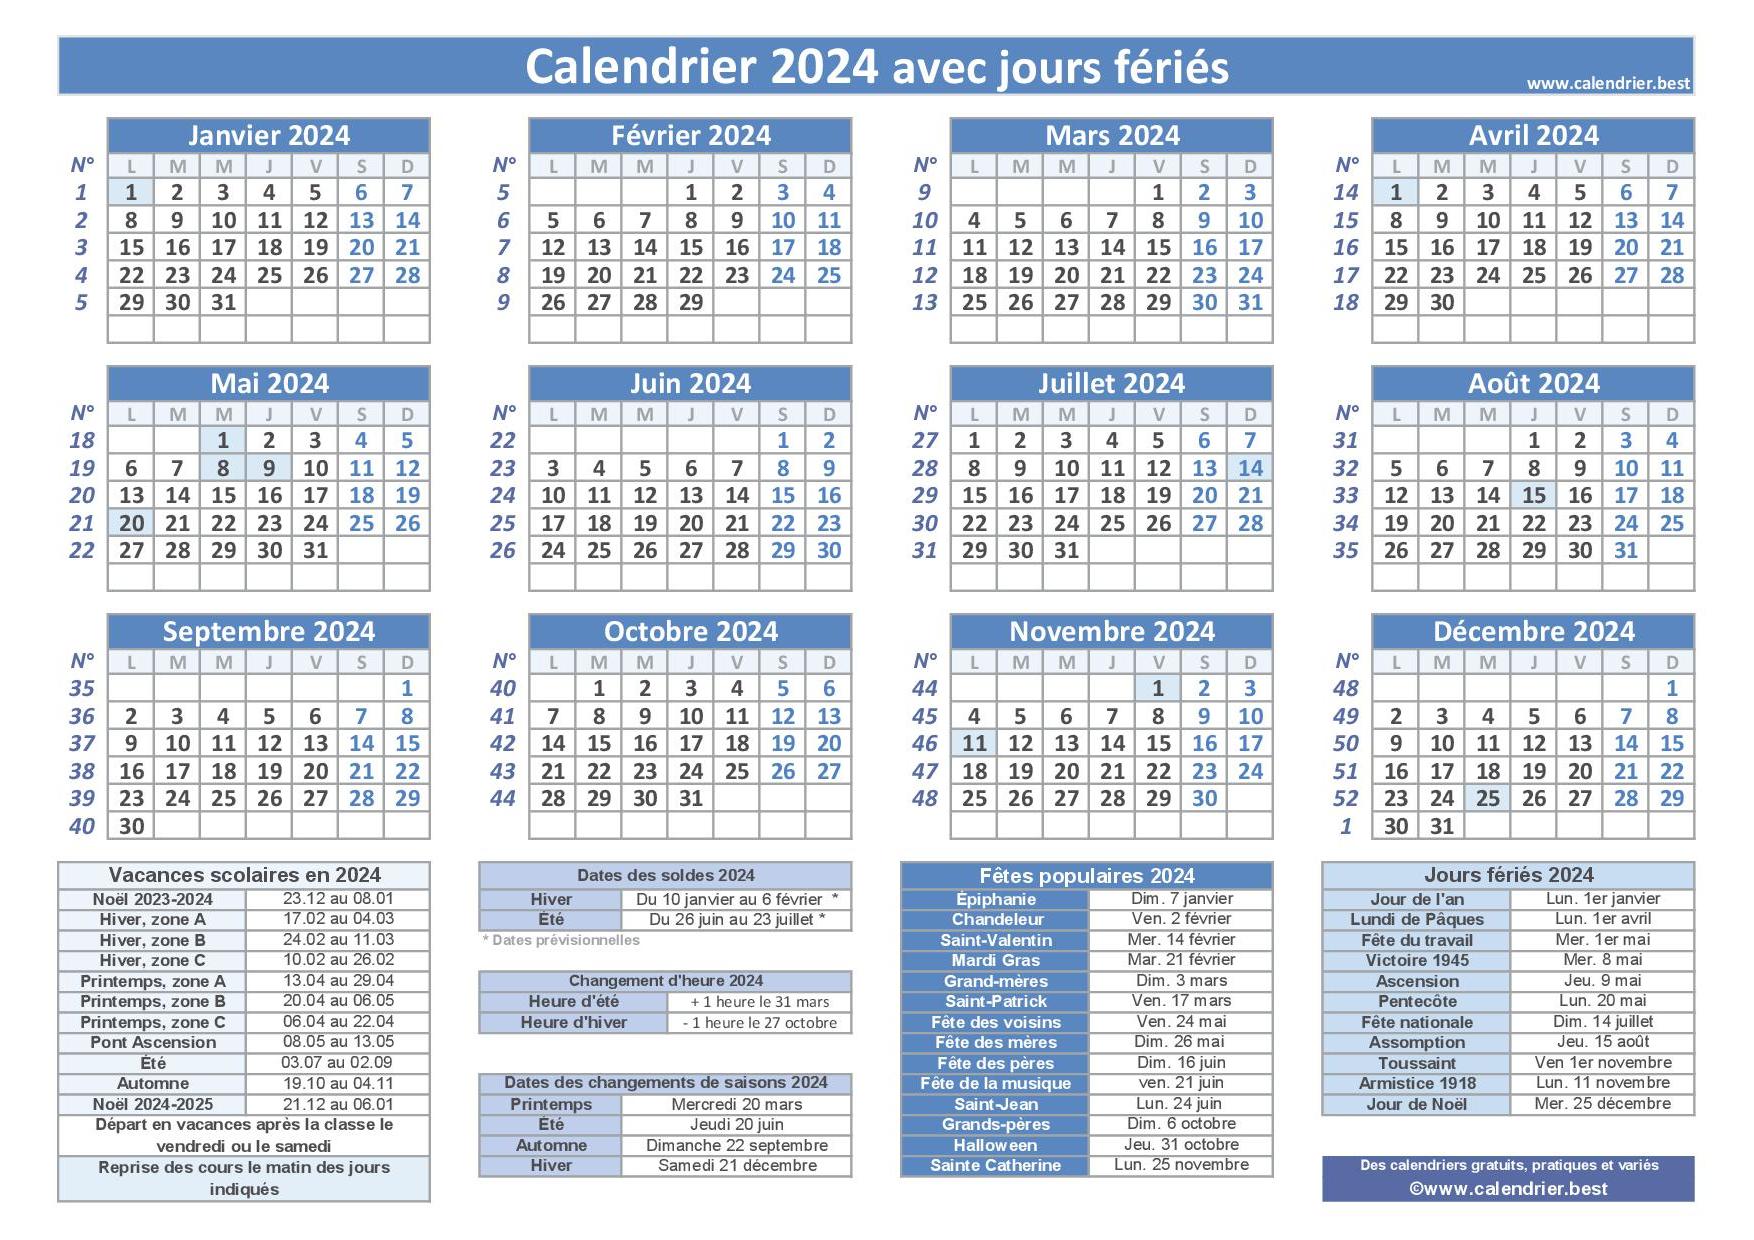 Dates des jours fériés 2023-2024  Calendrier 2023 2024 avec jours